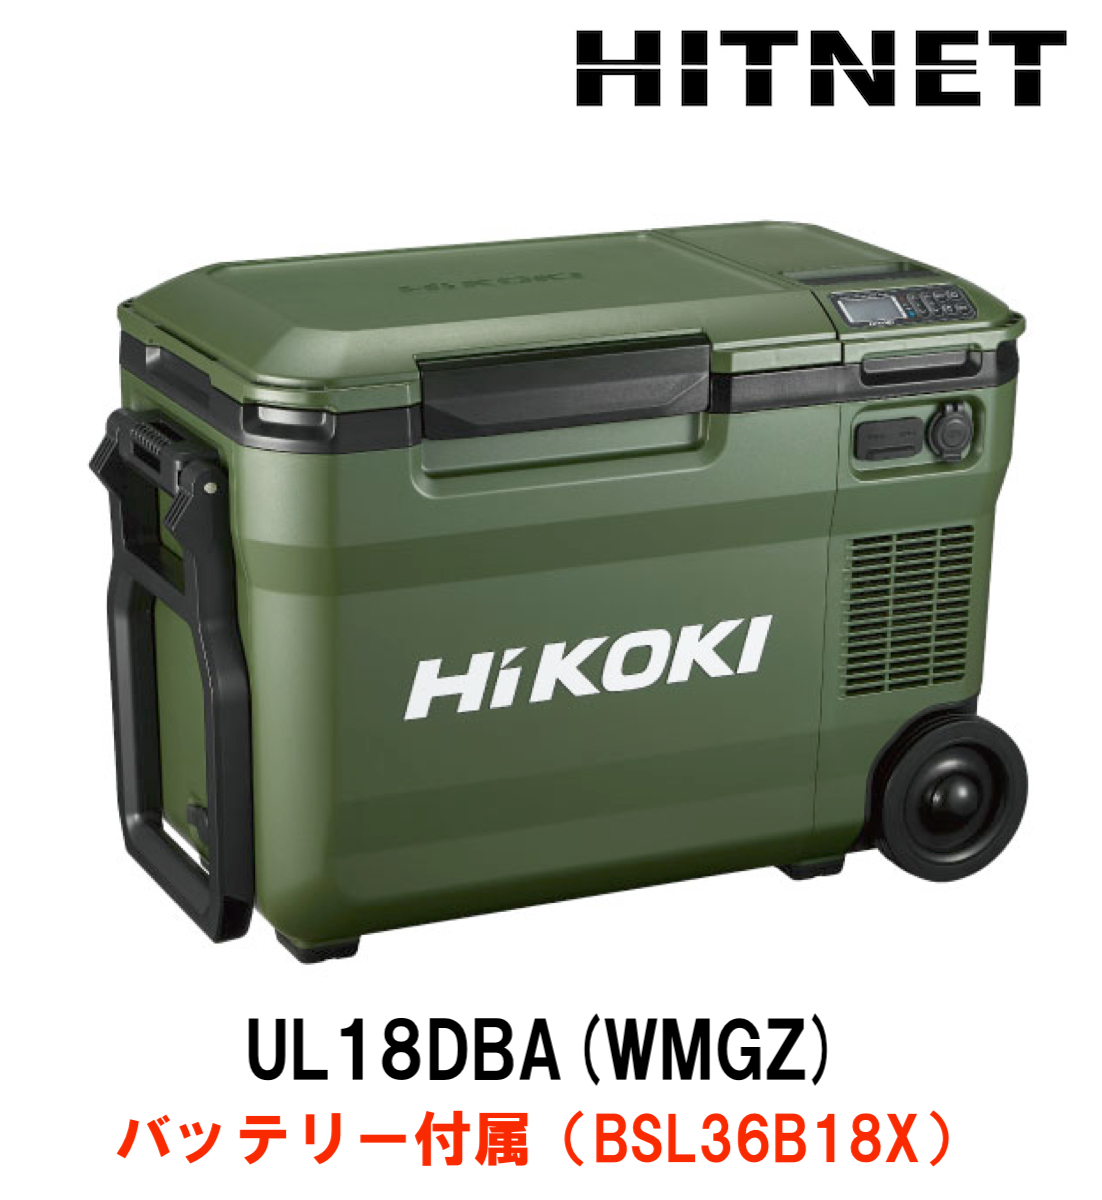 ハイコーキ 冷温庫 UL18DBA(WMGZ）バッテリー付属 : hitnet-0807 